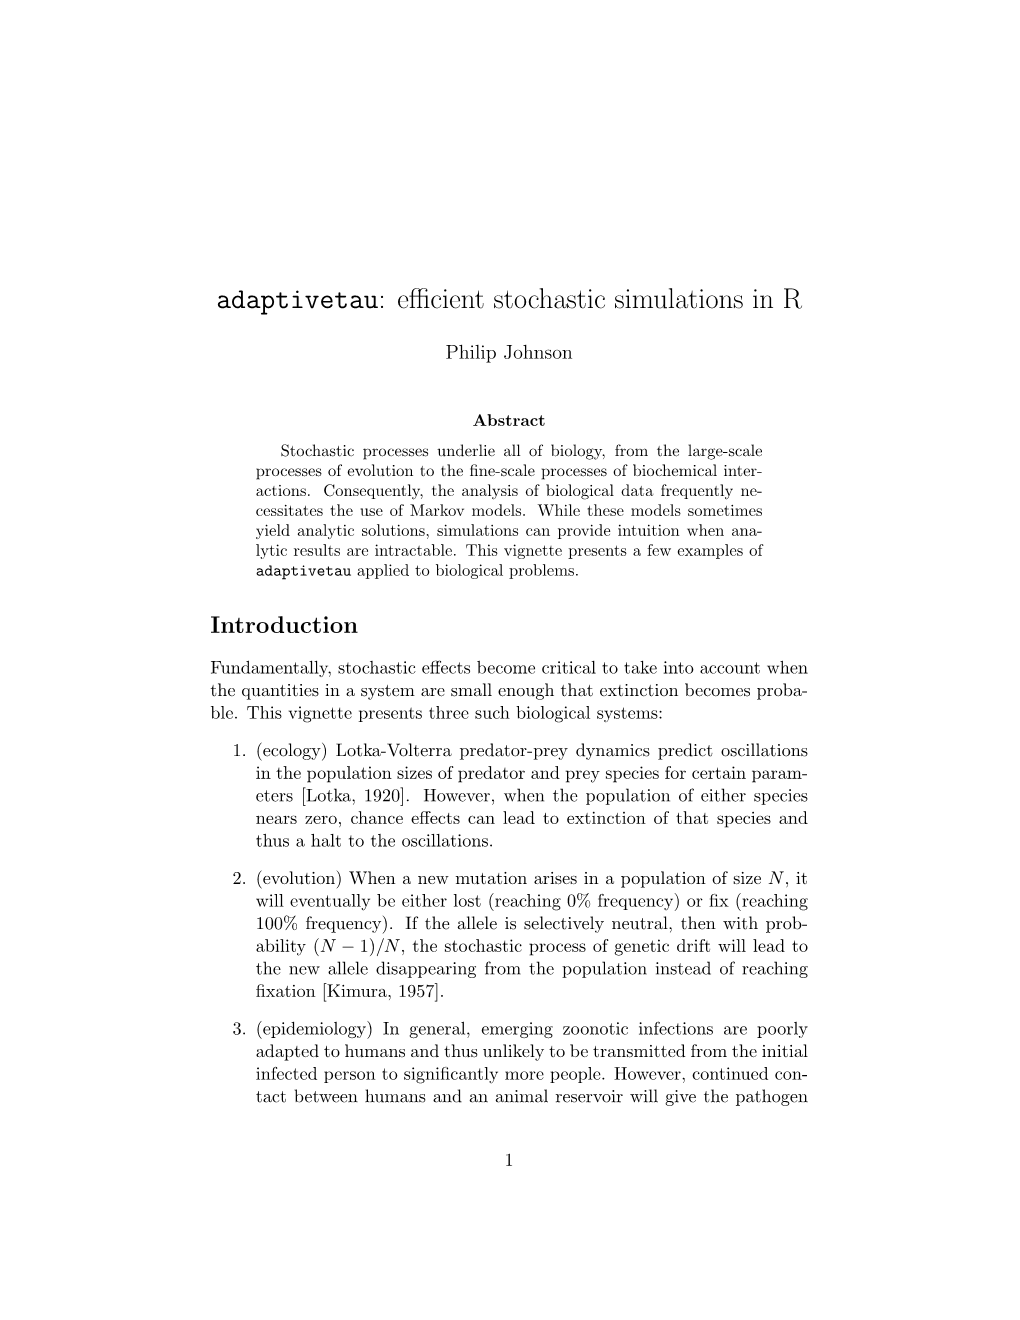 Adaptivetau: Efficient Stochastic Simulations in R